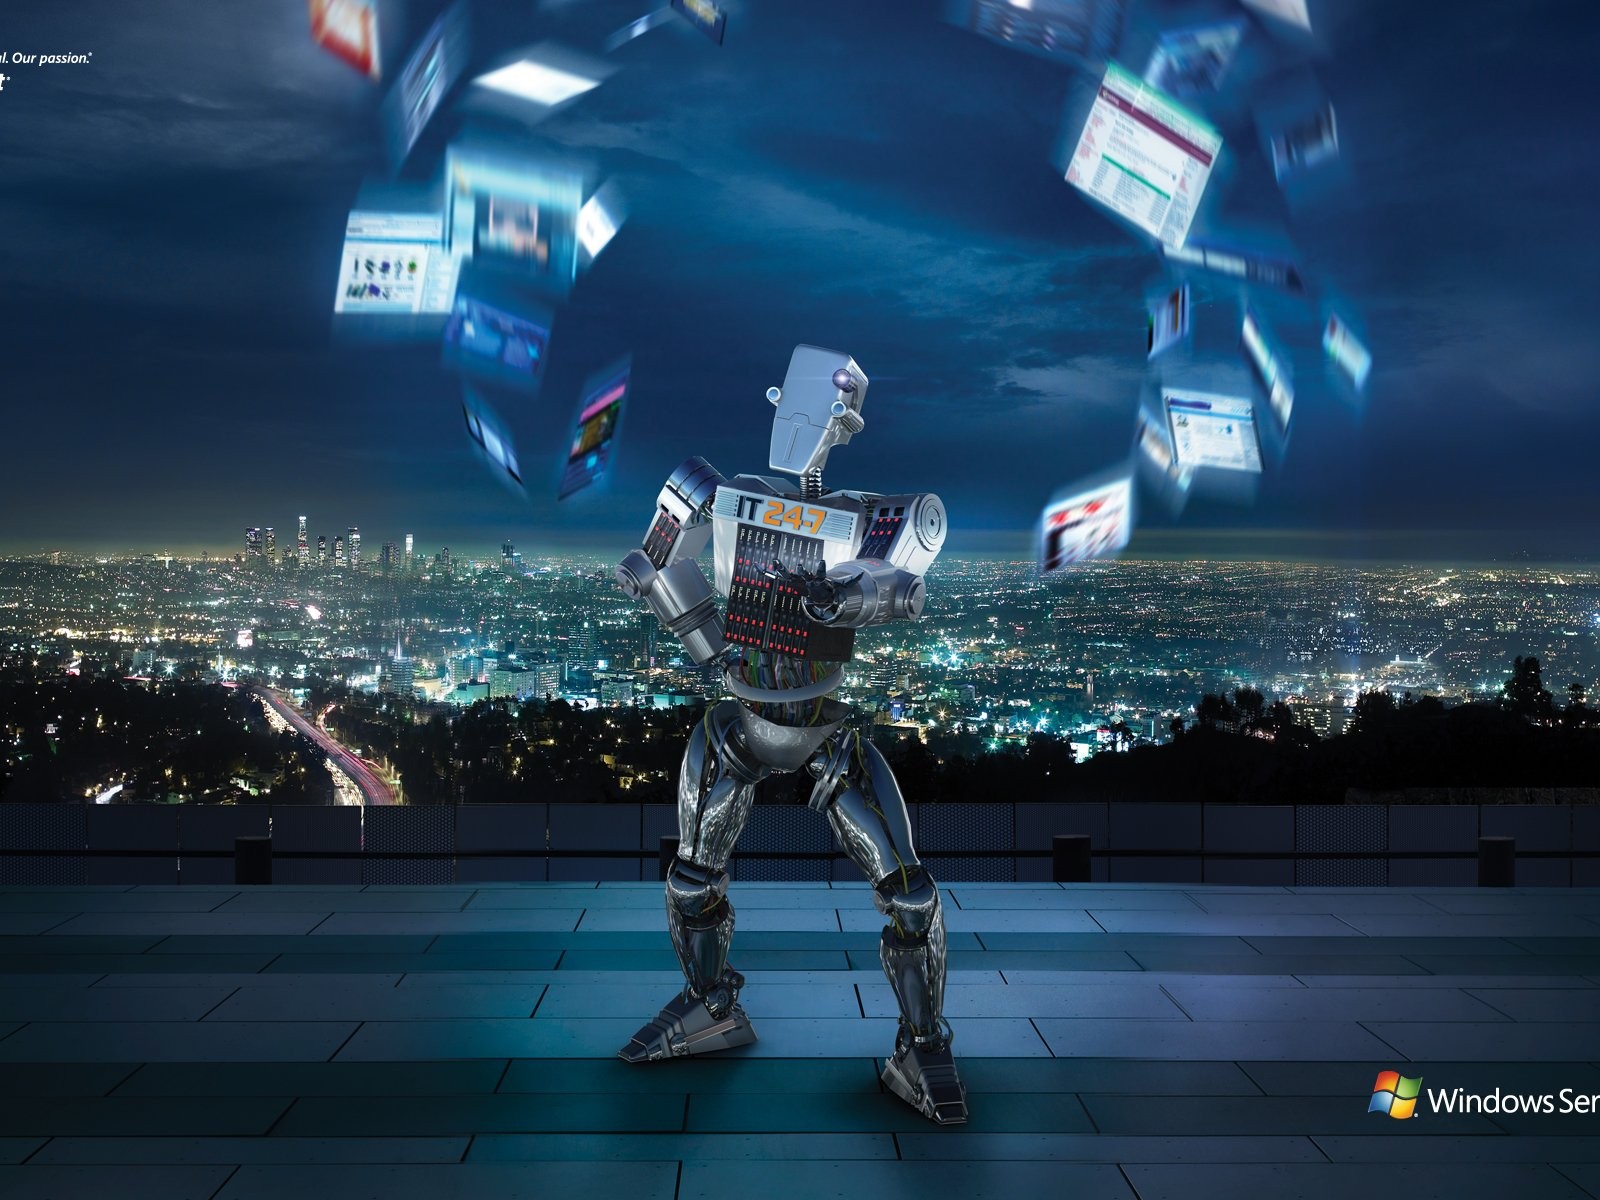 Windows IT Robot ad #1 - 1600x1200